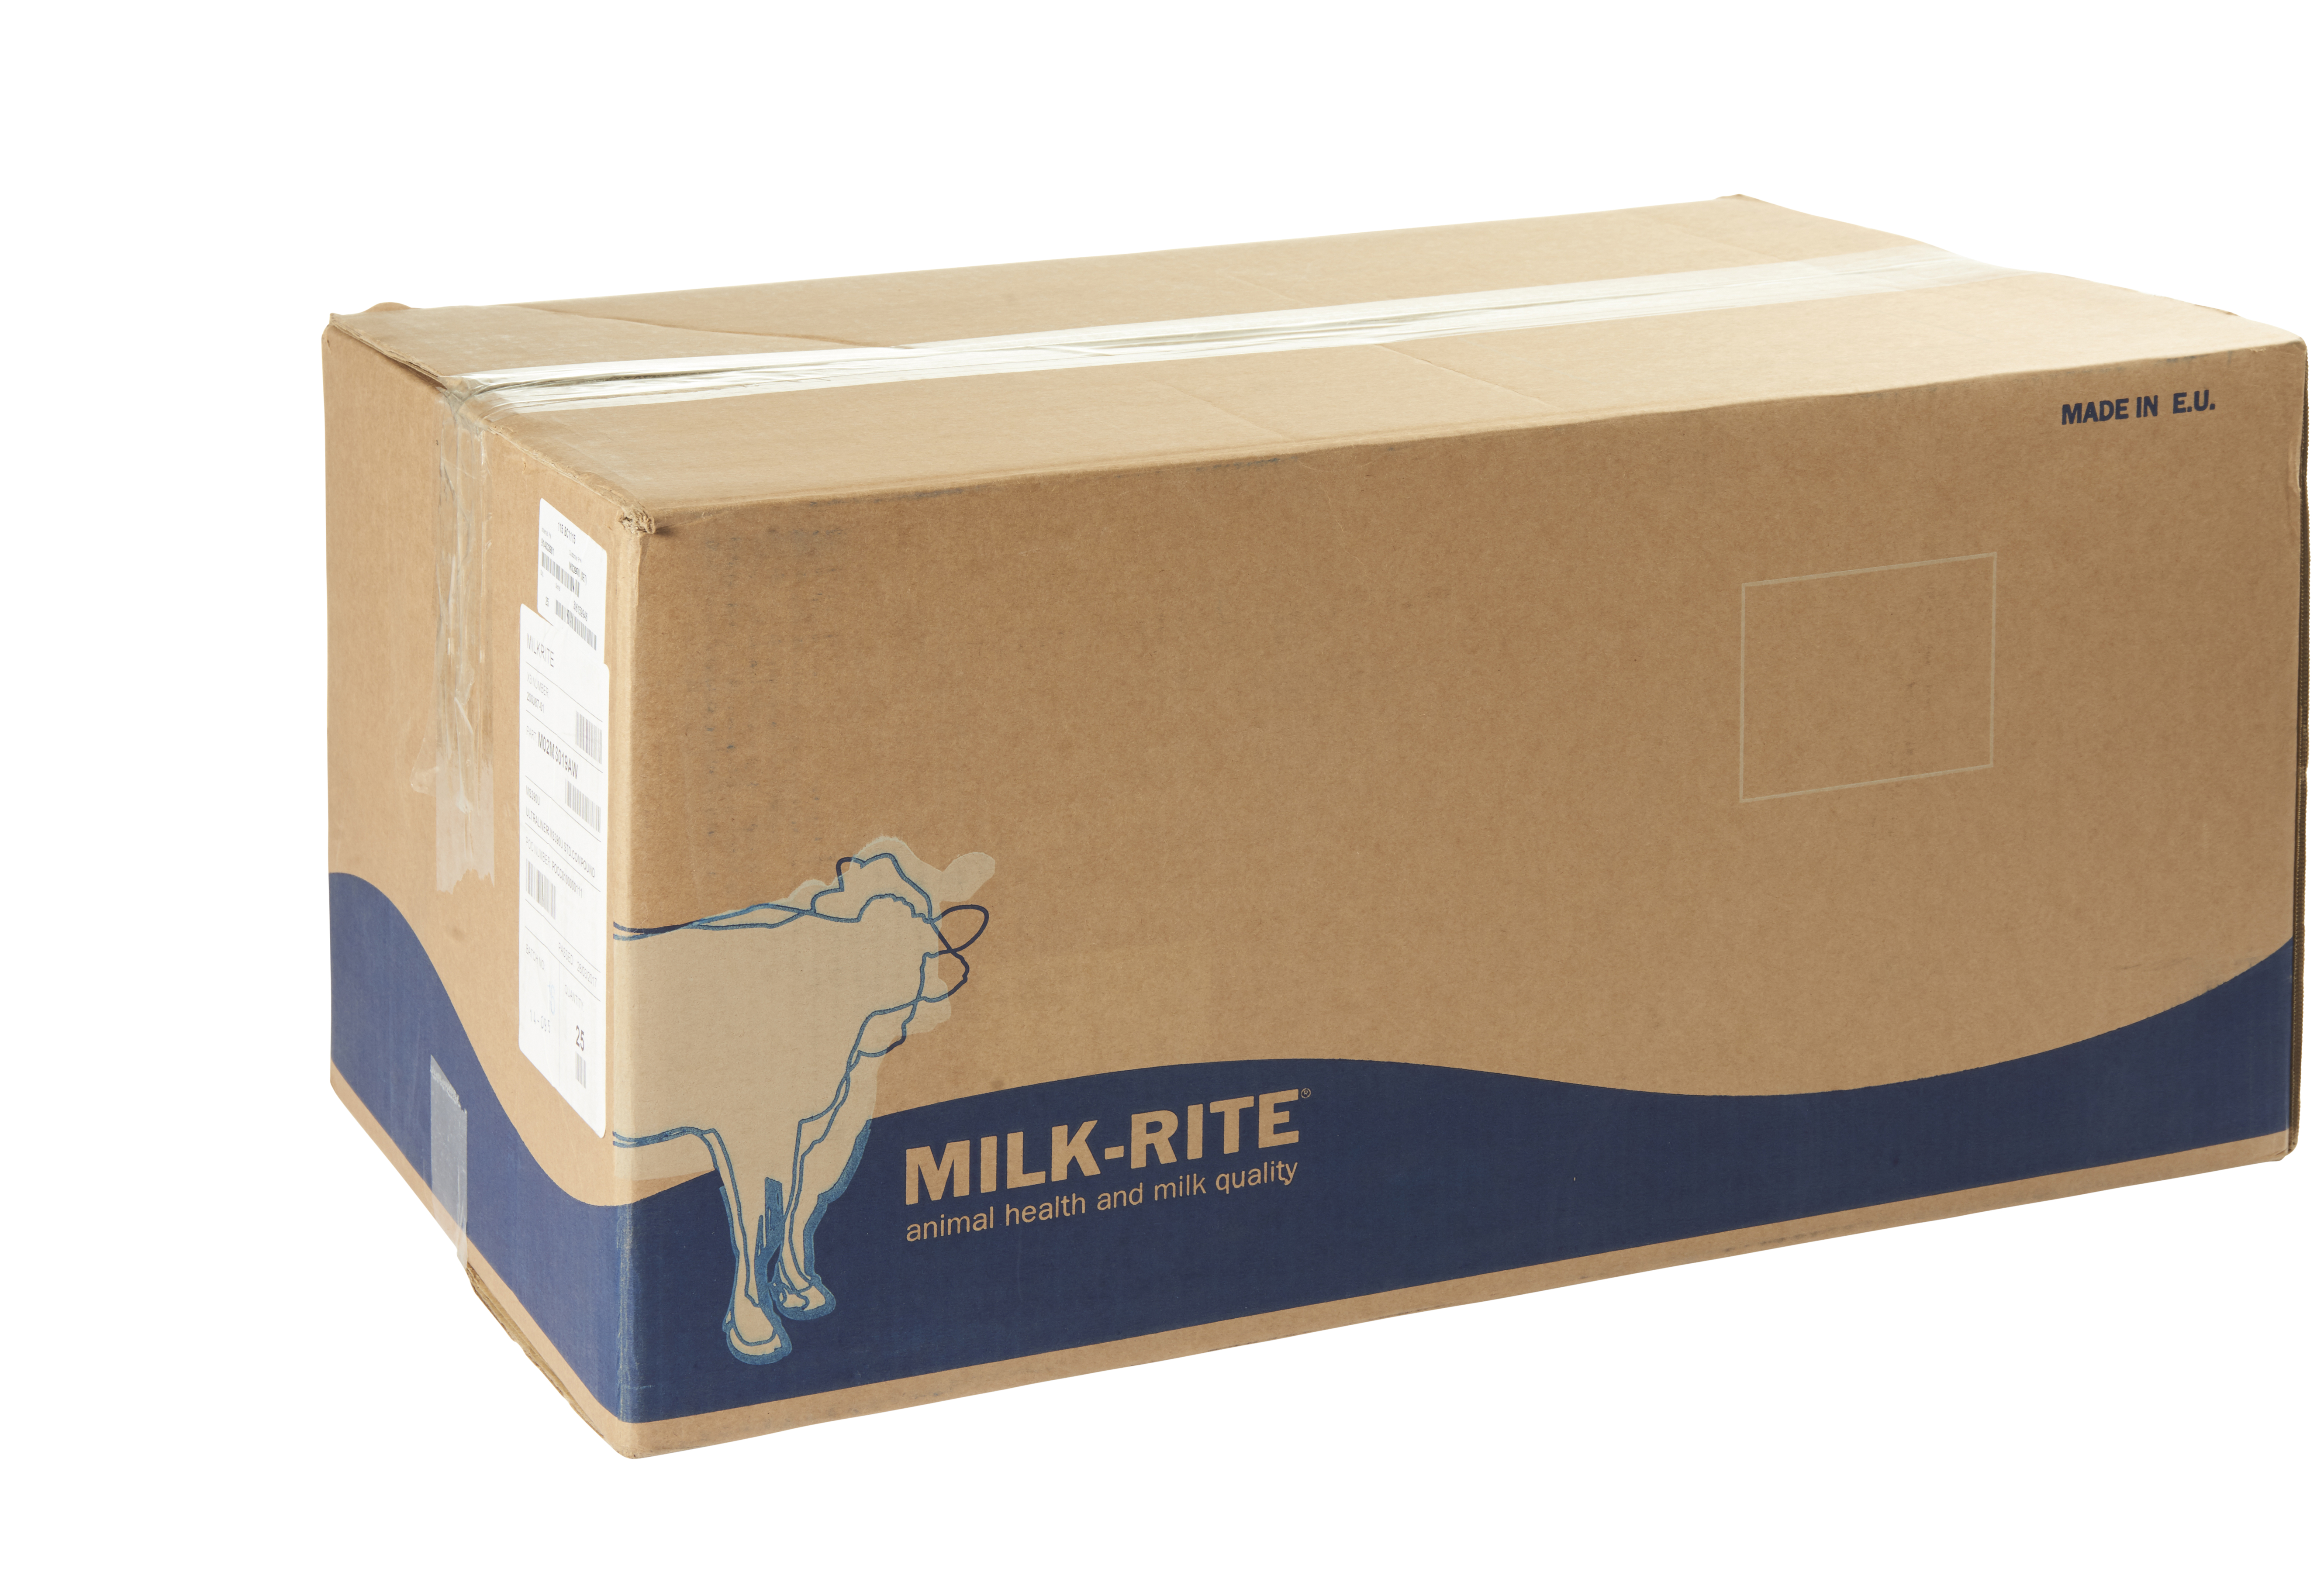 Zitzengummi Milkrite passend für Dairymaster, vgl. Nr. 916S